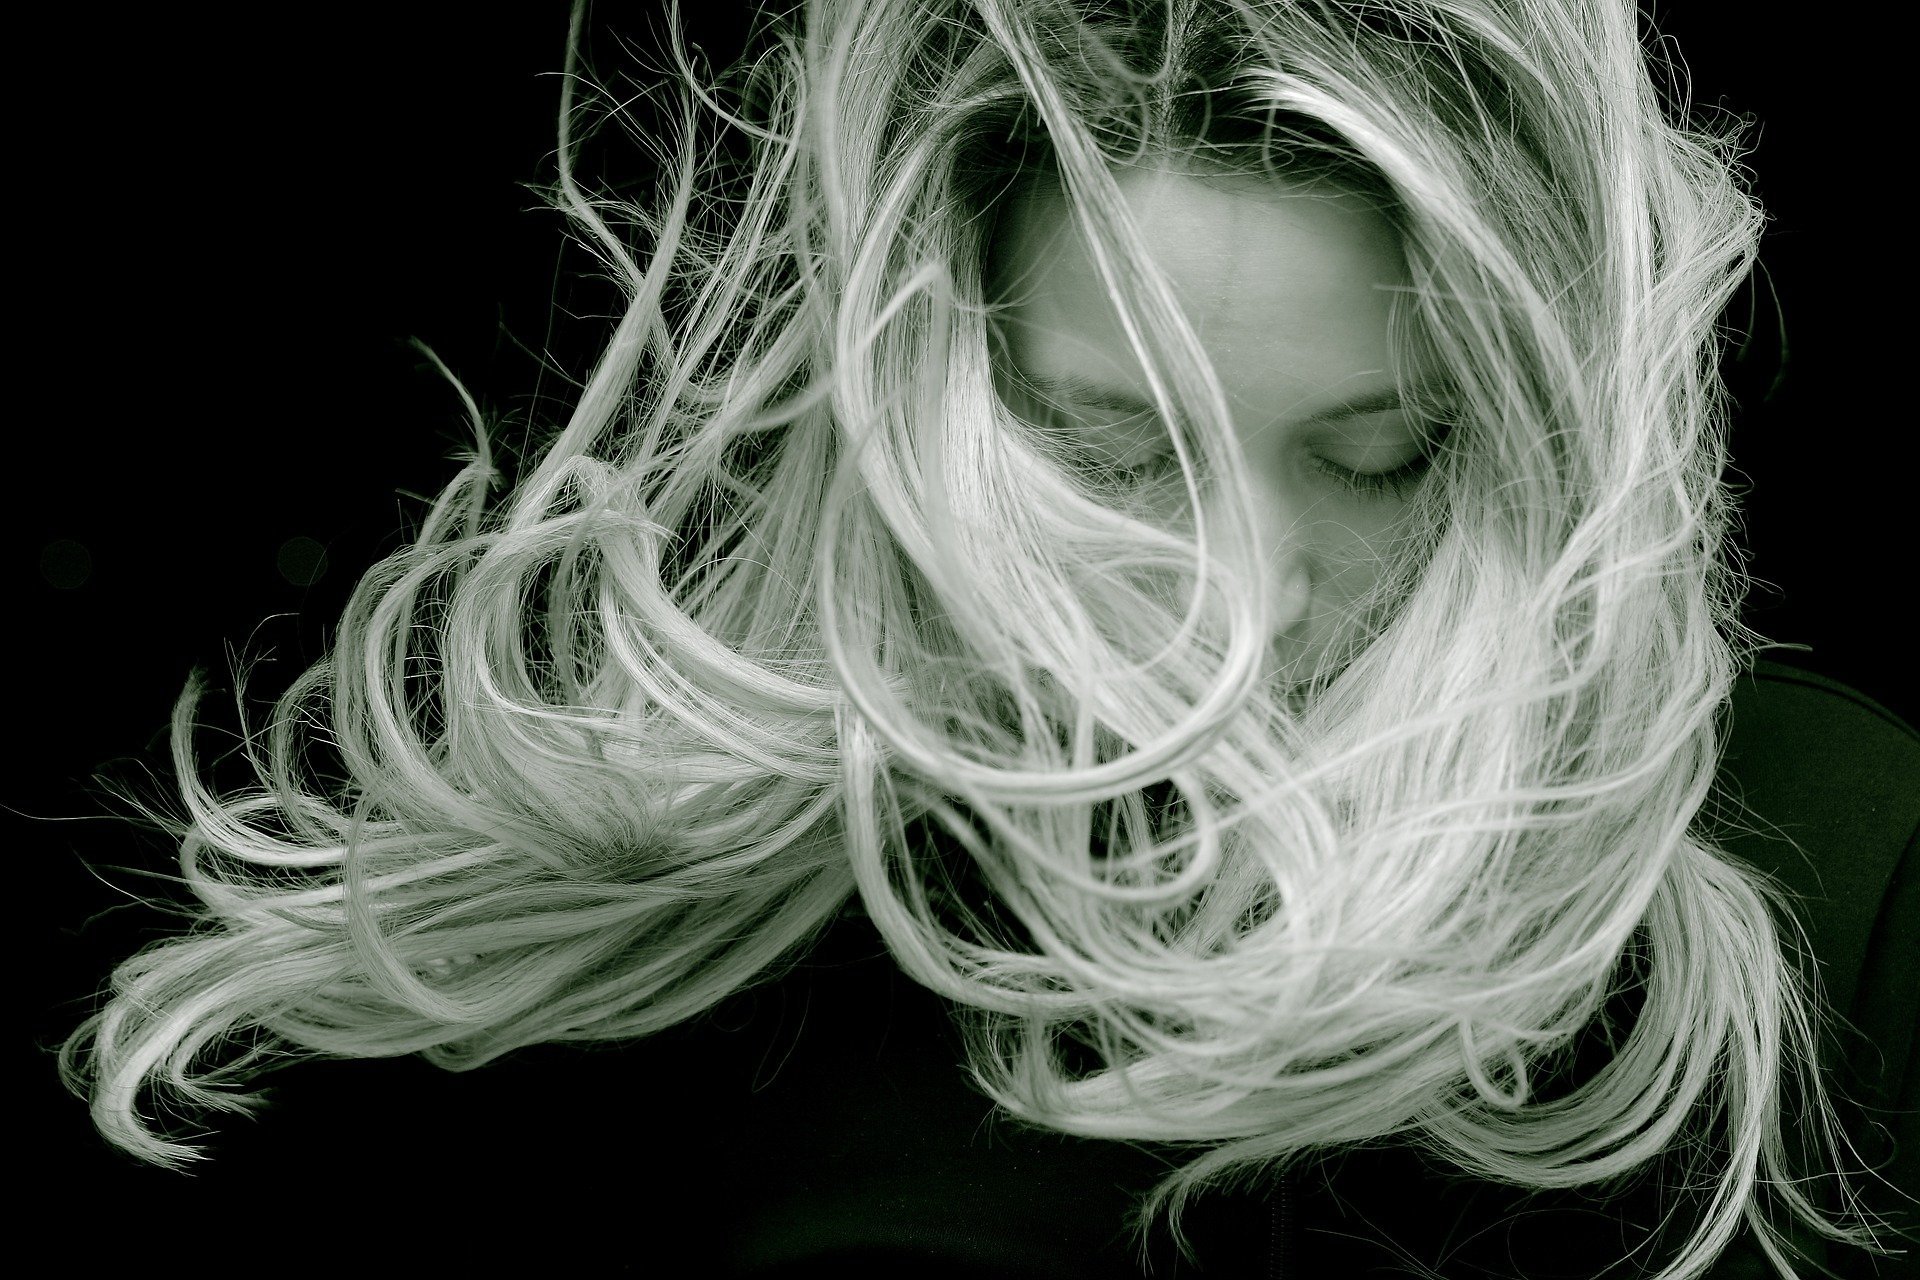 Foto preta e branca de mulher com cabelos ao vento e olhando para baixo.